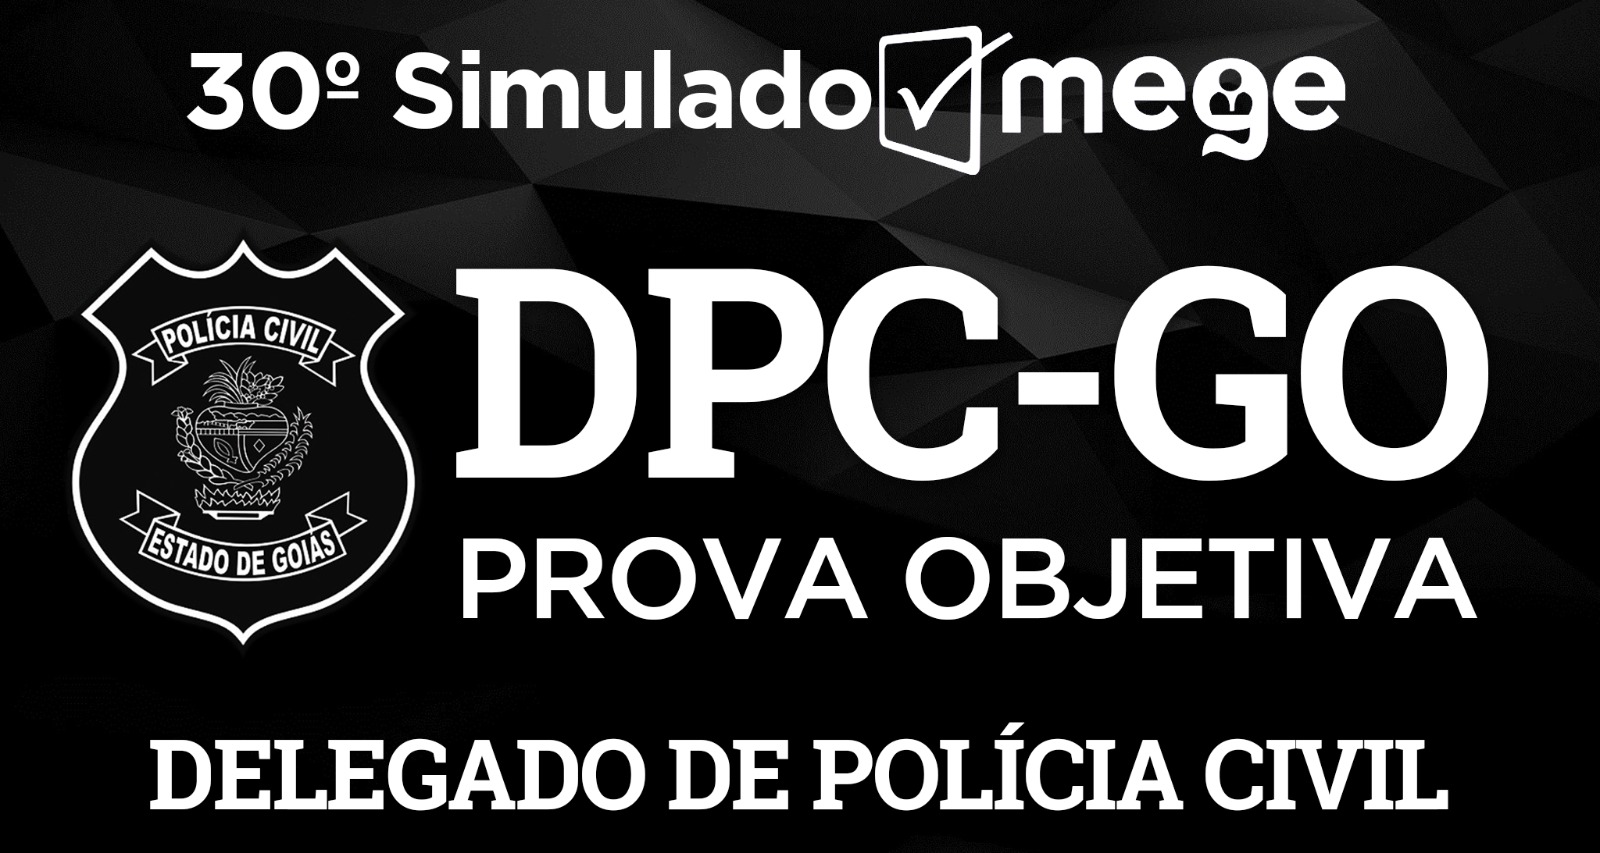 30º Simulado Mege (1ª Fase DPC-GO)